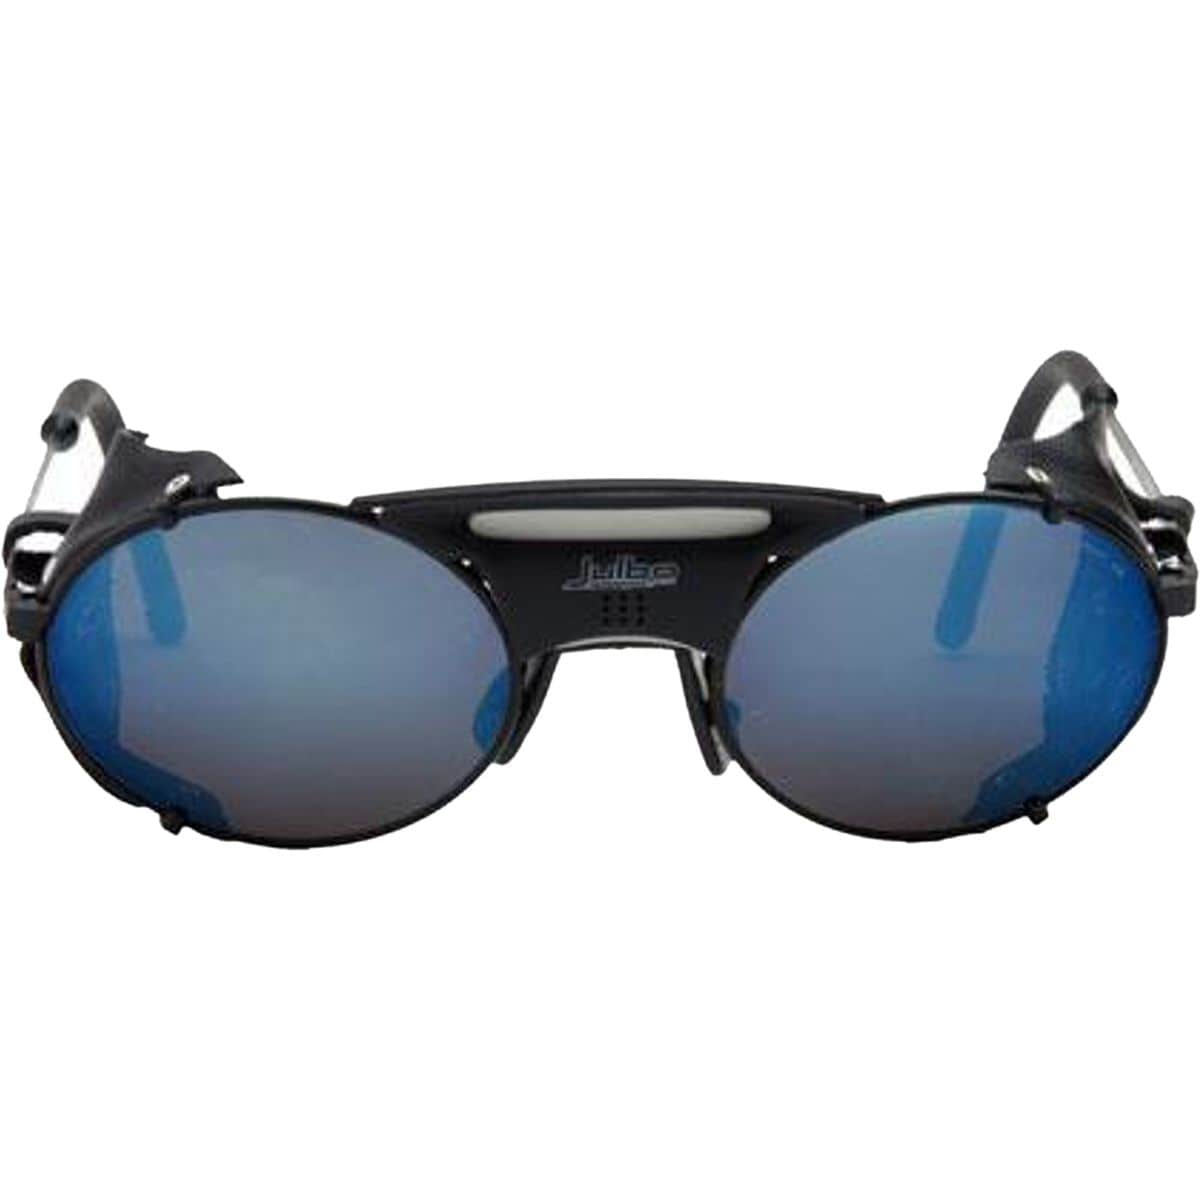 Julbo Micropore Sunglasses - Alti Arc 4+ Lens | eBay